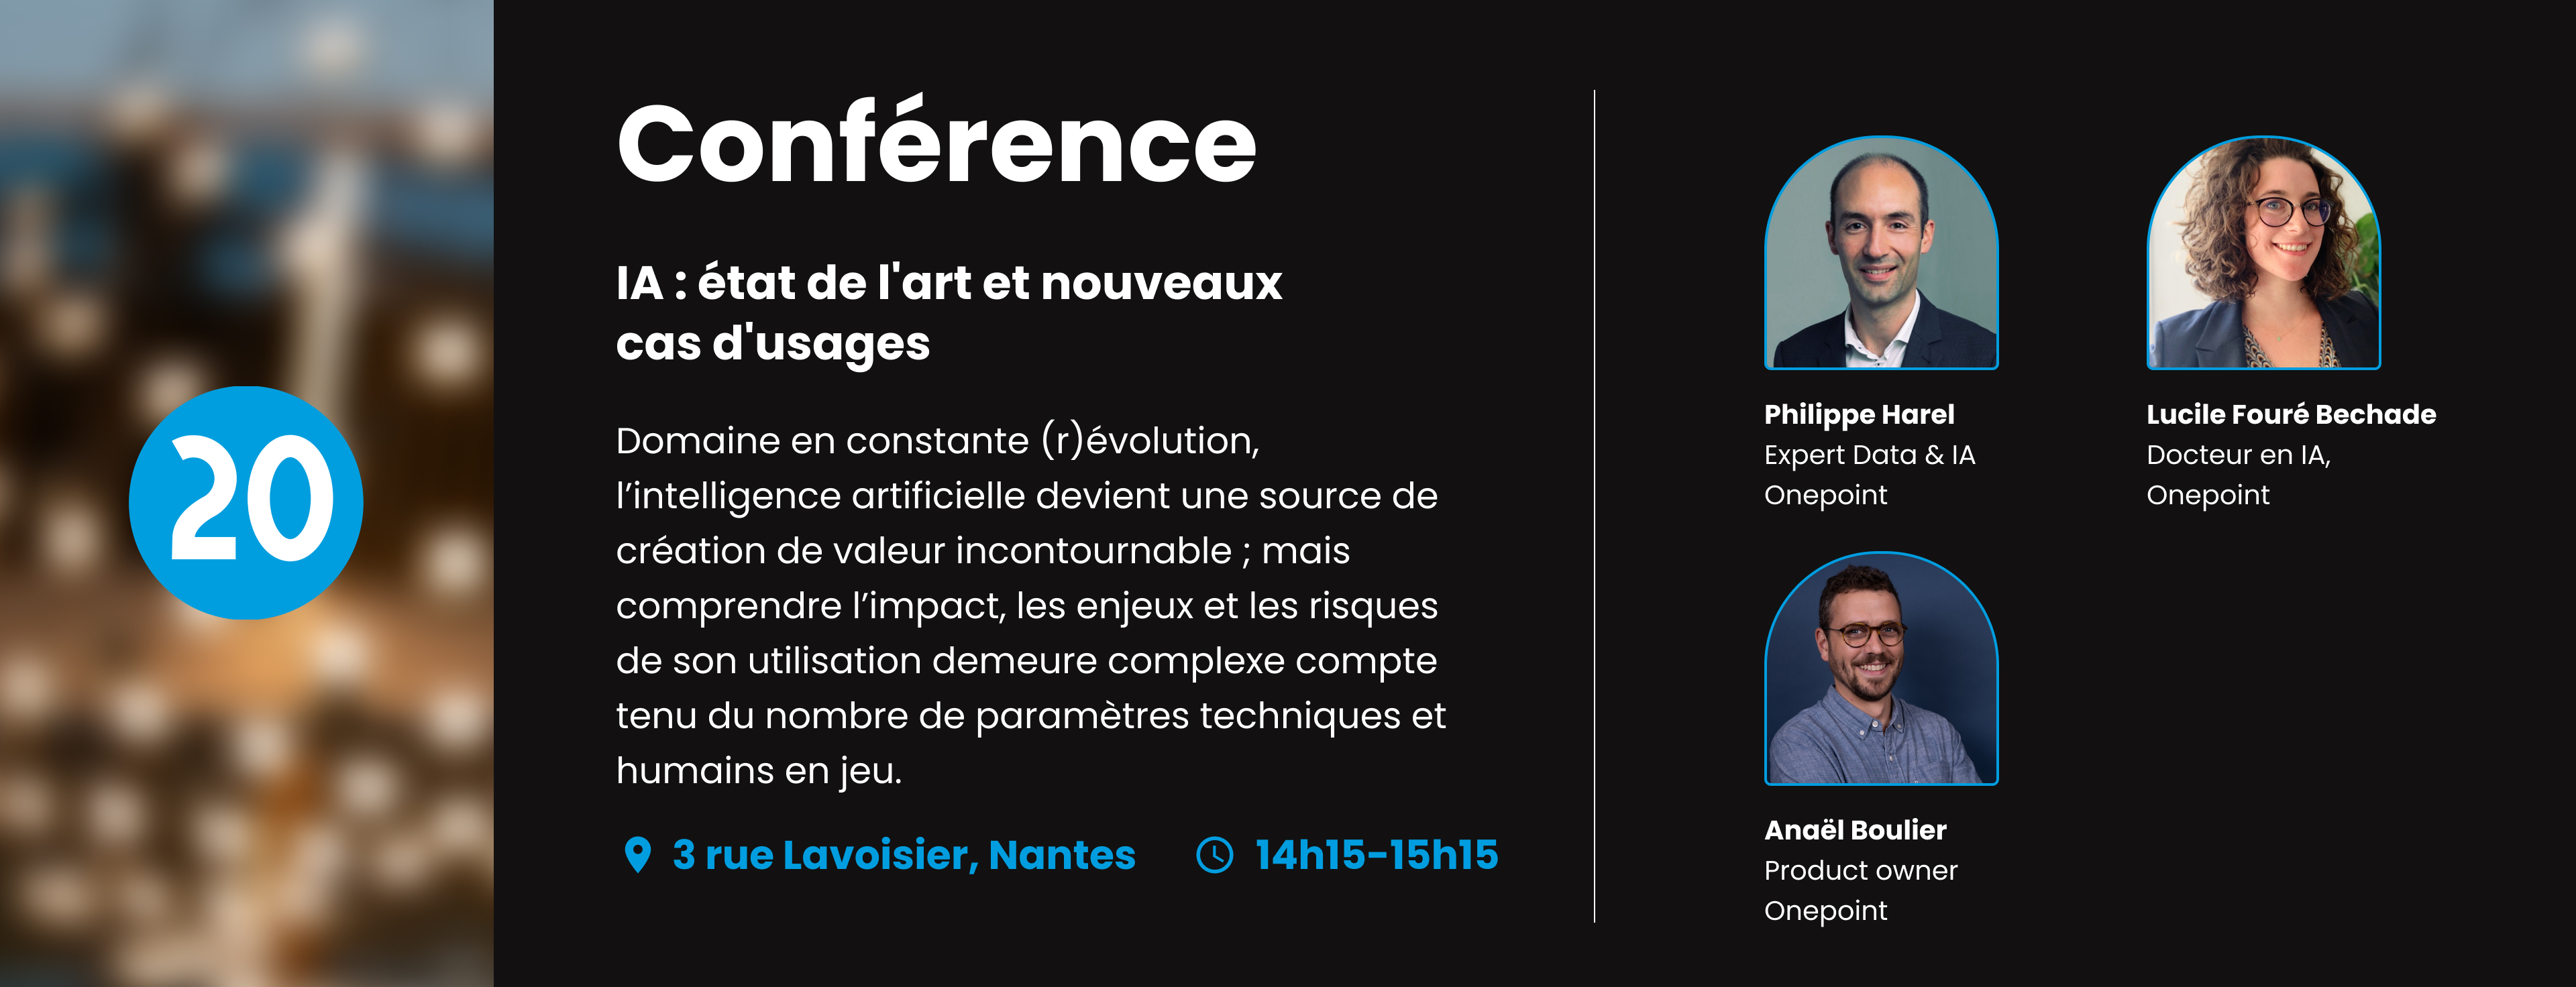 Image de la conférence IA de l'inauguration onepoint à Nantes